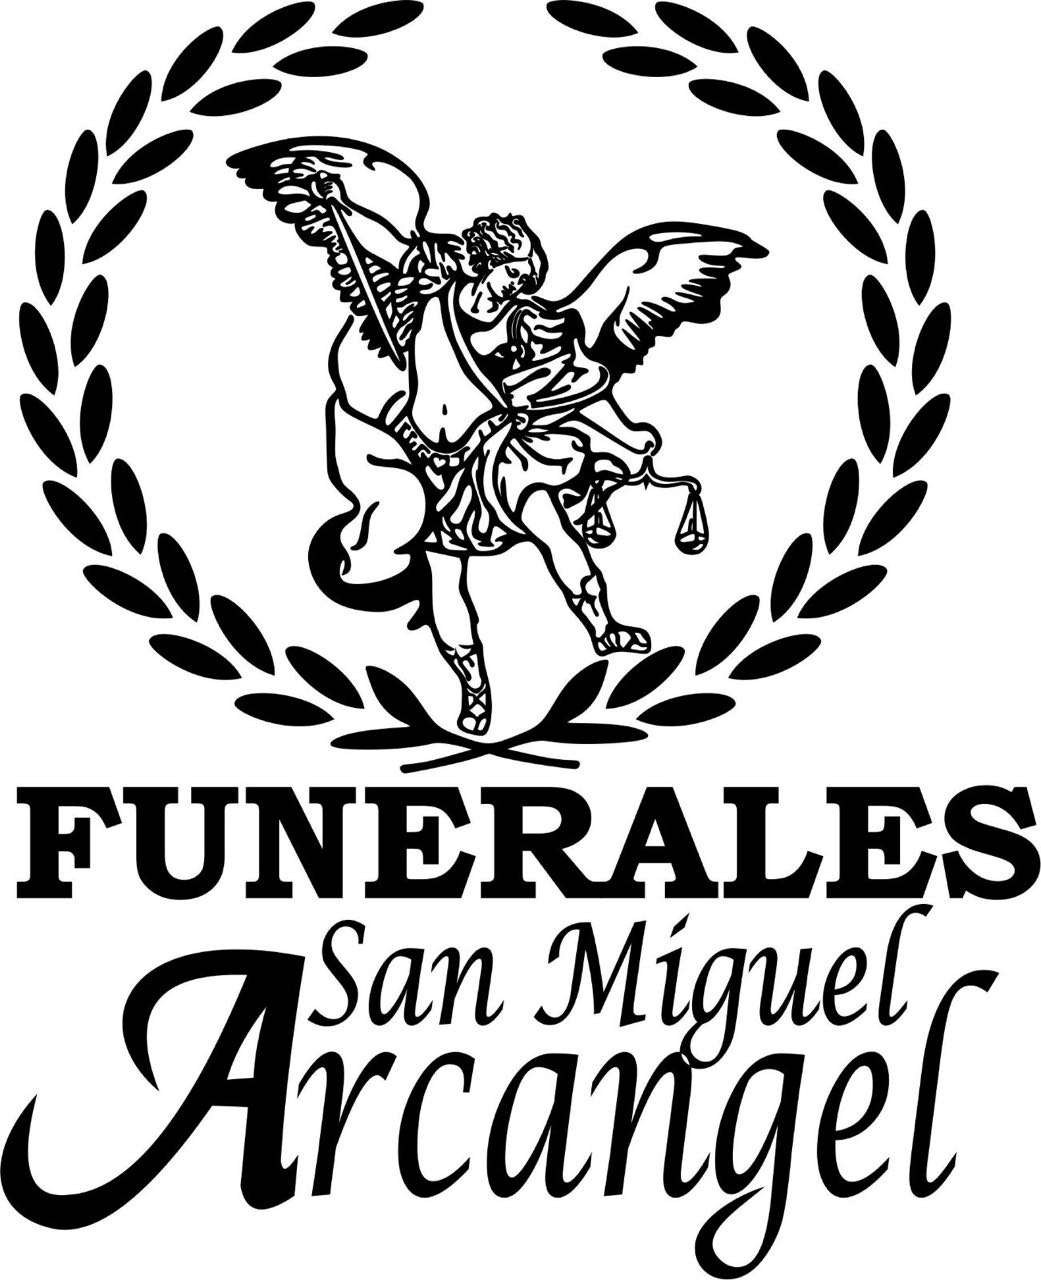 Funerales San Miguel Arcangel